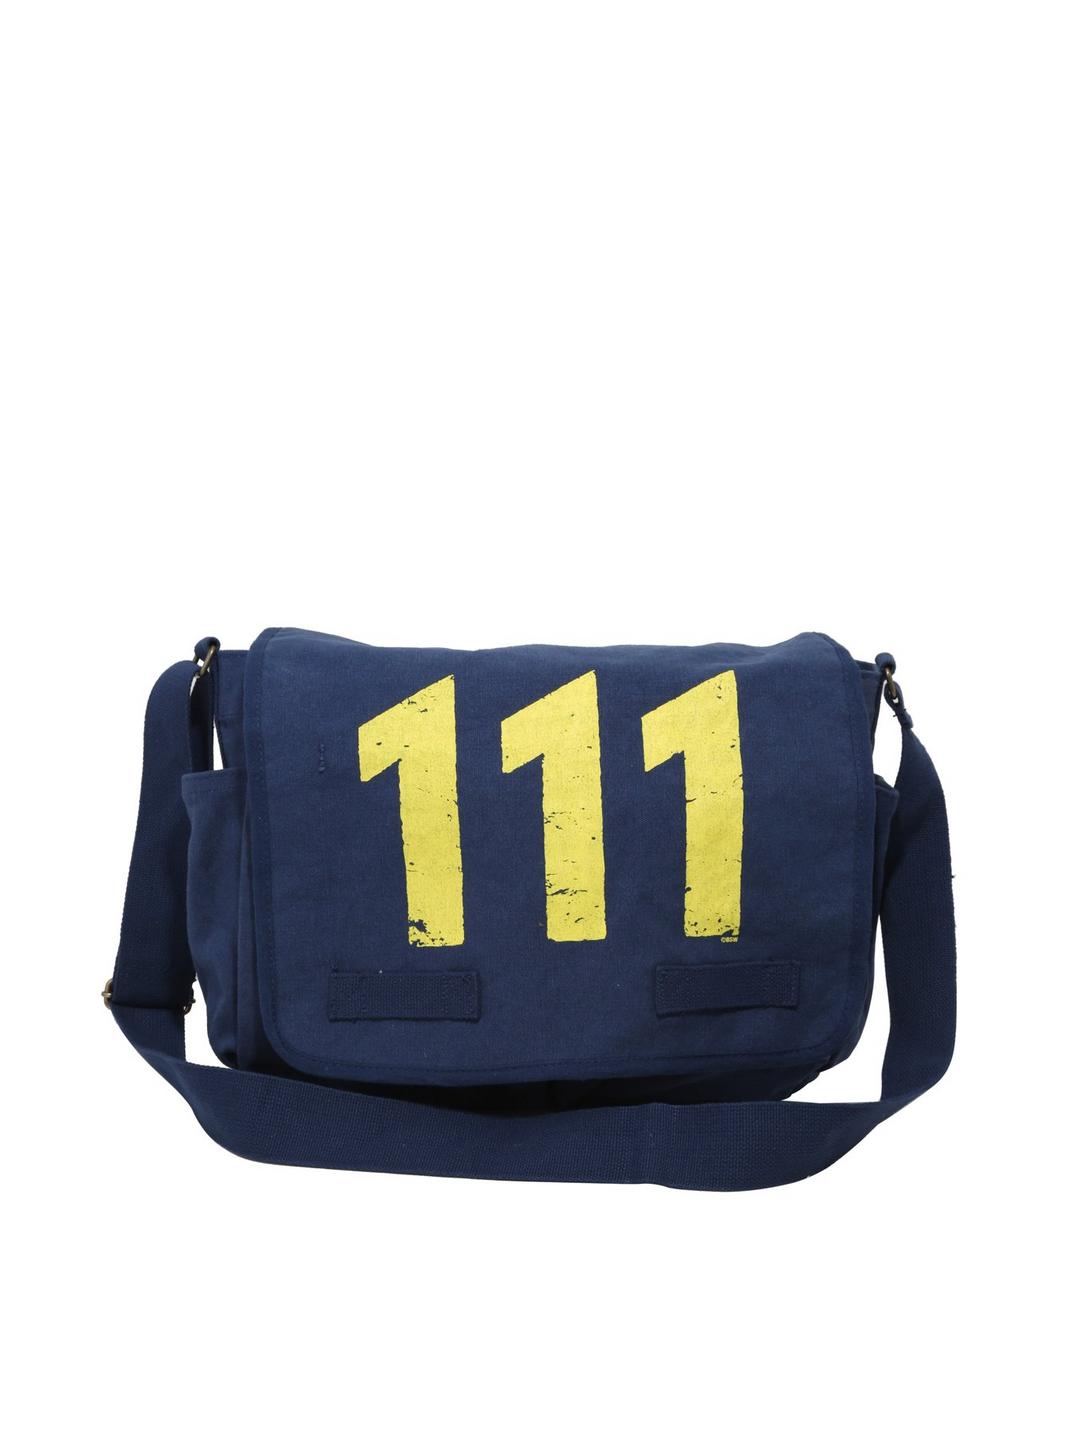 Fallout Vault 111 Messenger Bag, , hi-res